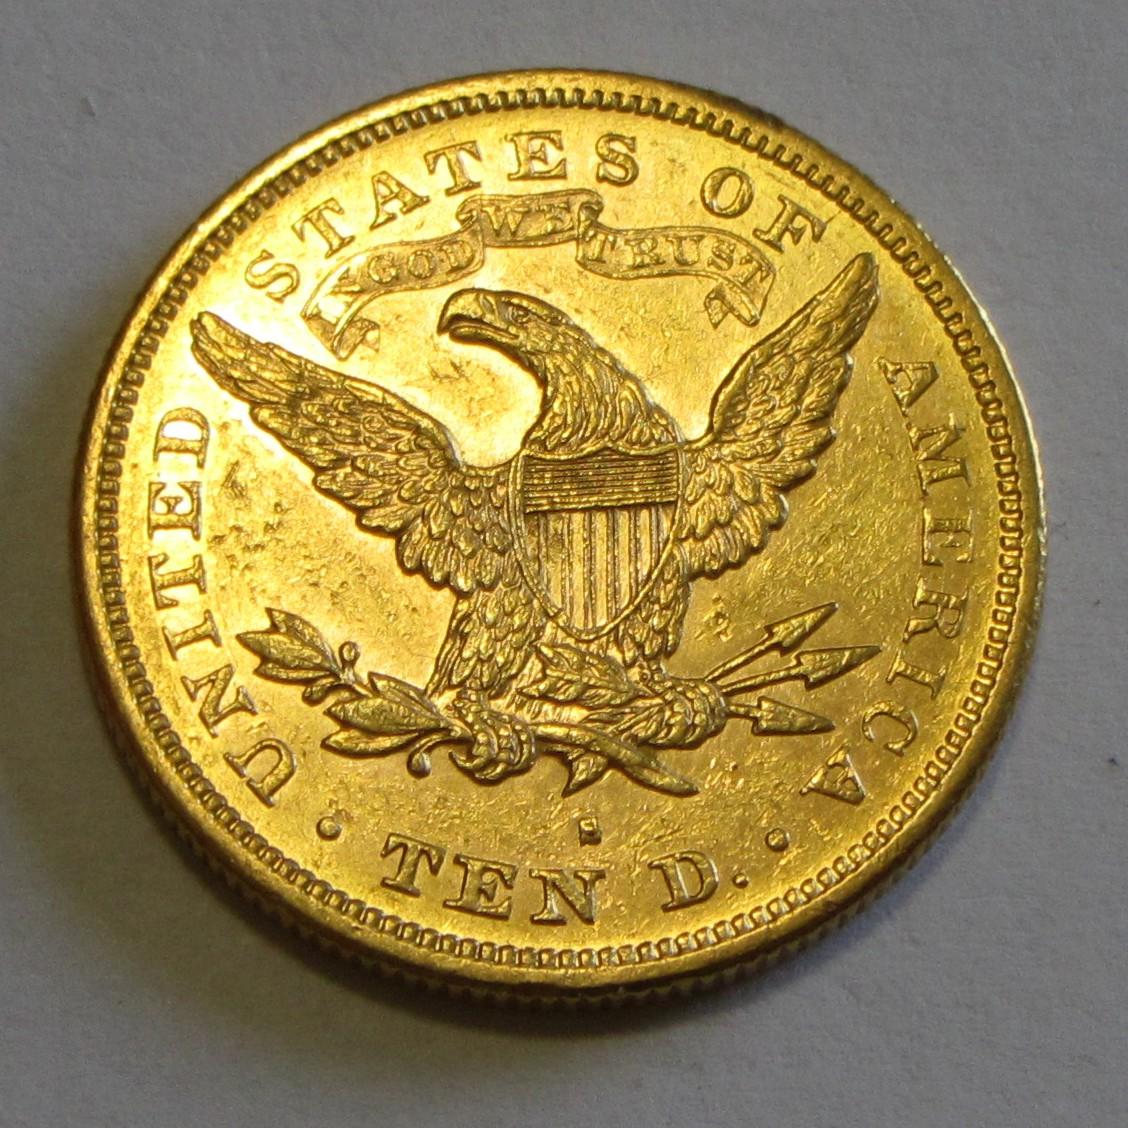 $10 GOLD EAGLE 1880-S HIGH GRADE